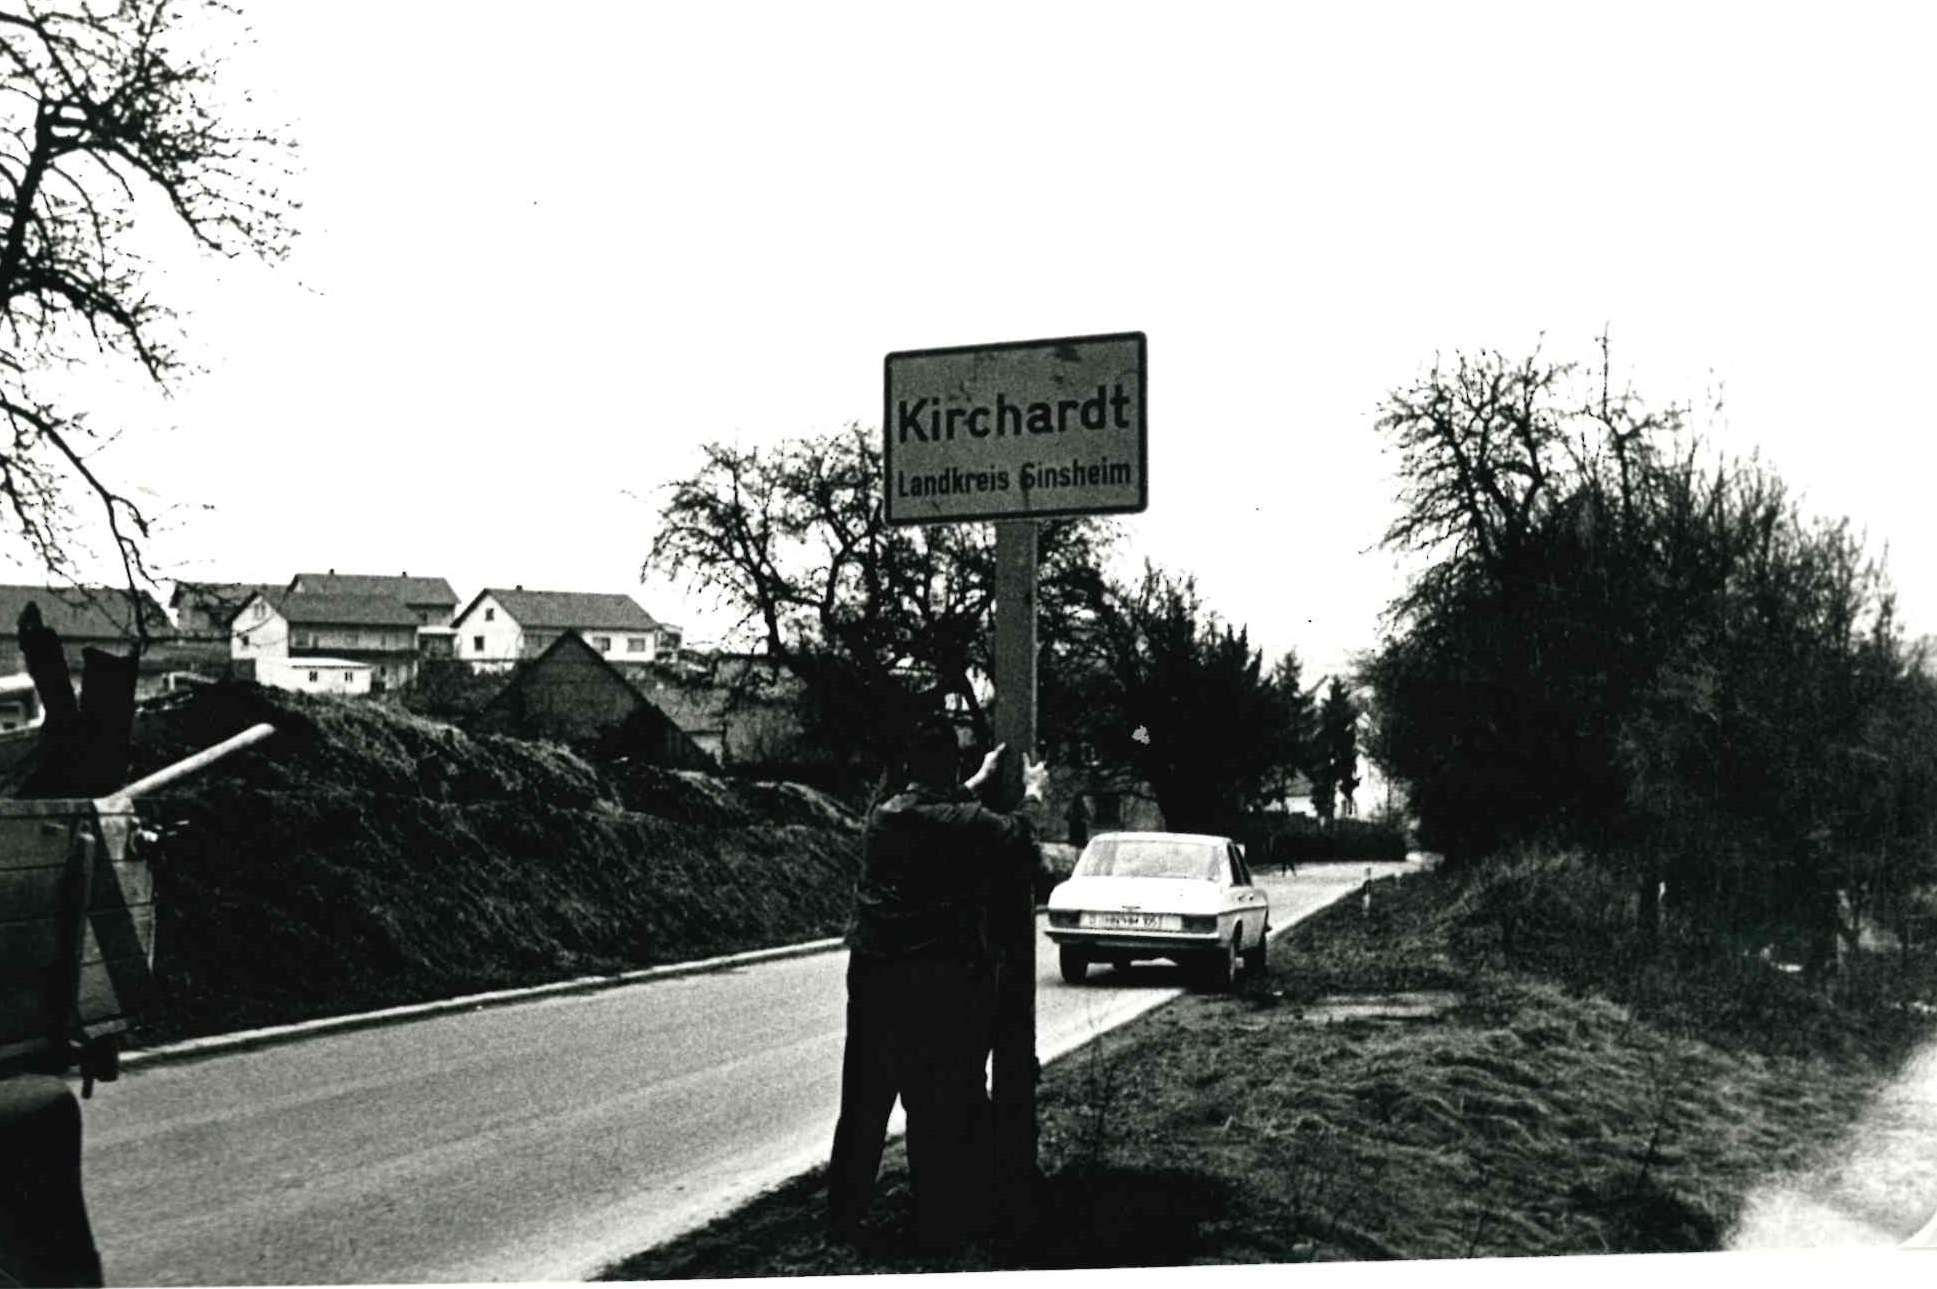  Zwei Gemeindearbeiter gemontieren das alte Ortsschild, auf dem noch &quot;Kirchardt - Landkreis Ssinsheim&quot; steht. Im Hintergrund ein parkendes Fahrzeug am Straßenrand und erste Häuser des Ortes links im Bild. - Das Bild wird mit Klick vergrößert Das Bild wird mit Klick vergrößert 